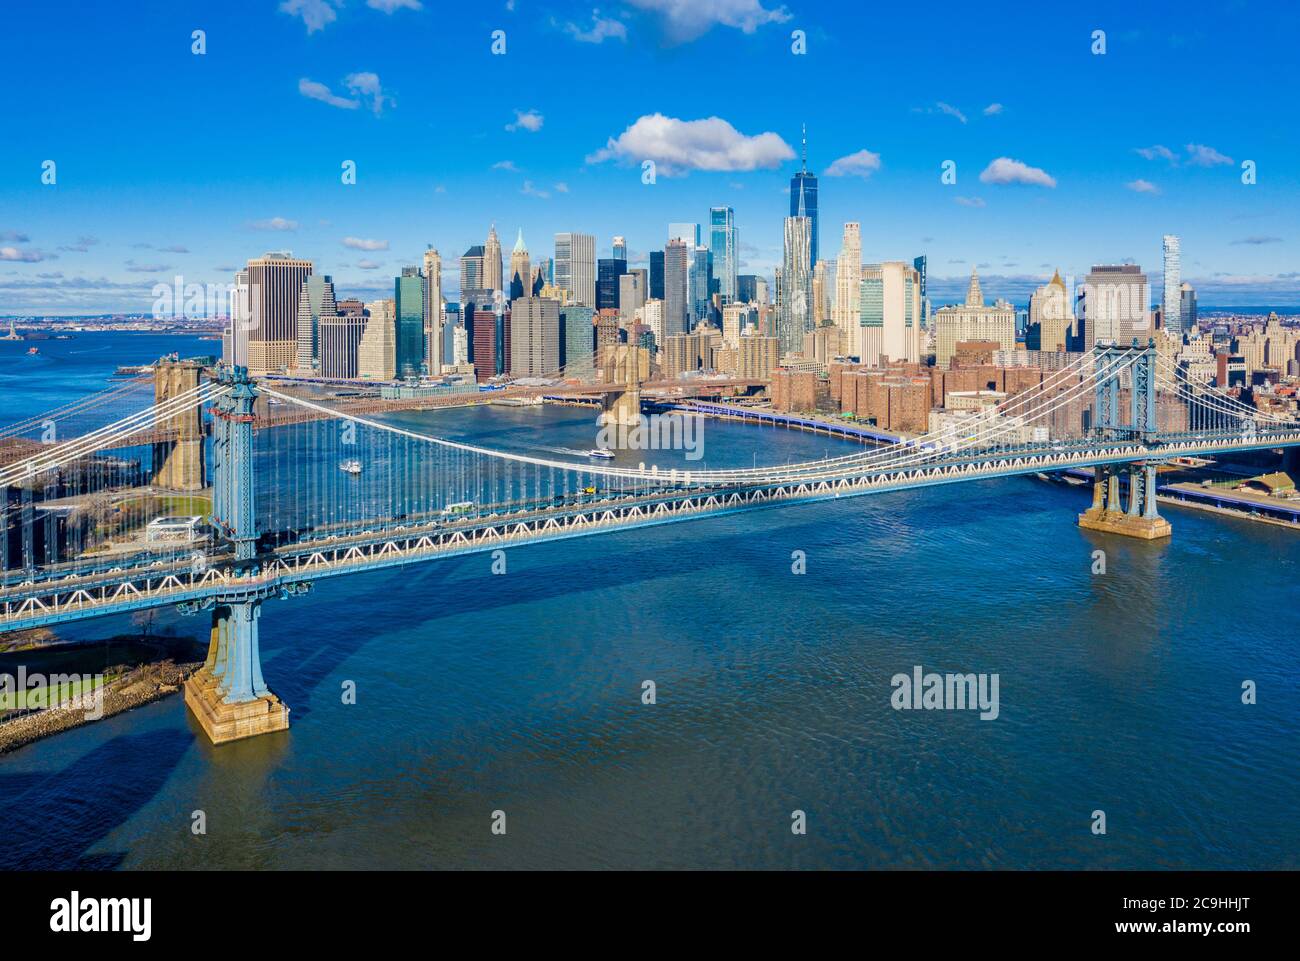 Vue aérienne des ponts de Brooklyn et de Manhattan avec les gratte-ciel de Lower Manhattan en arrière-plan le long de l'East River, près du Brooklyn Bridge Park Banque D'Images